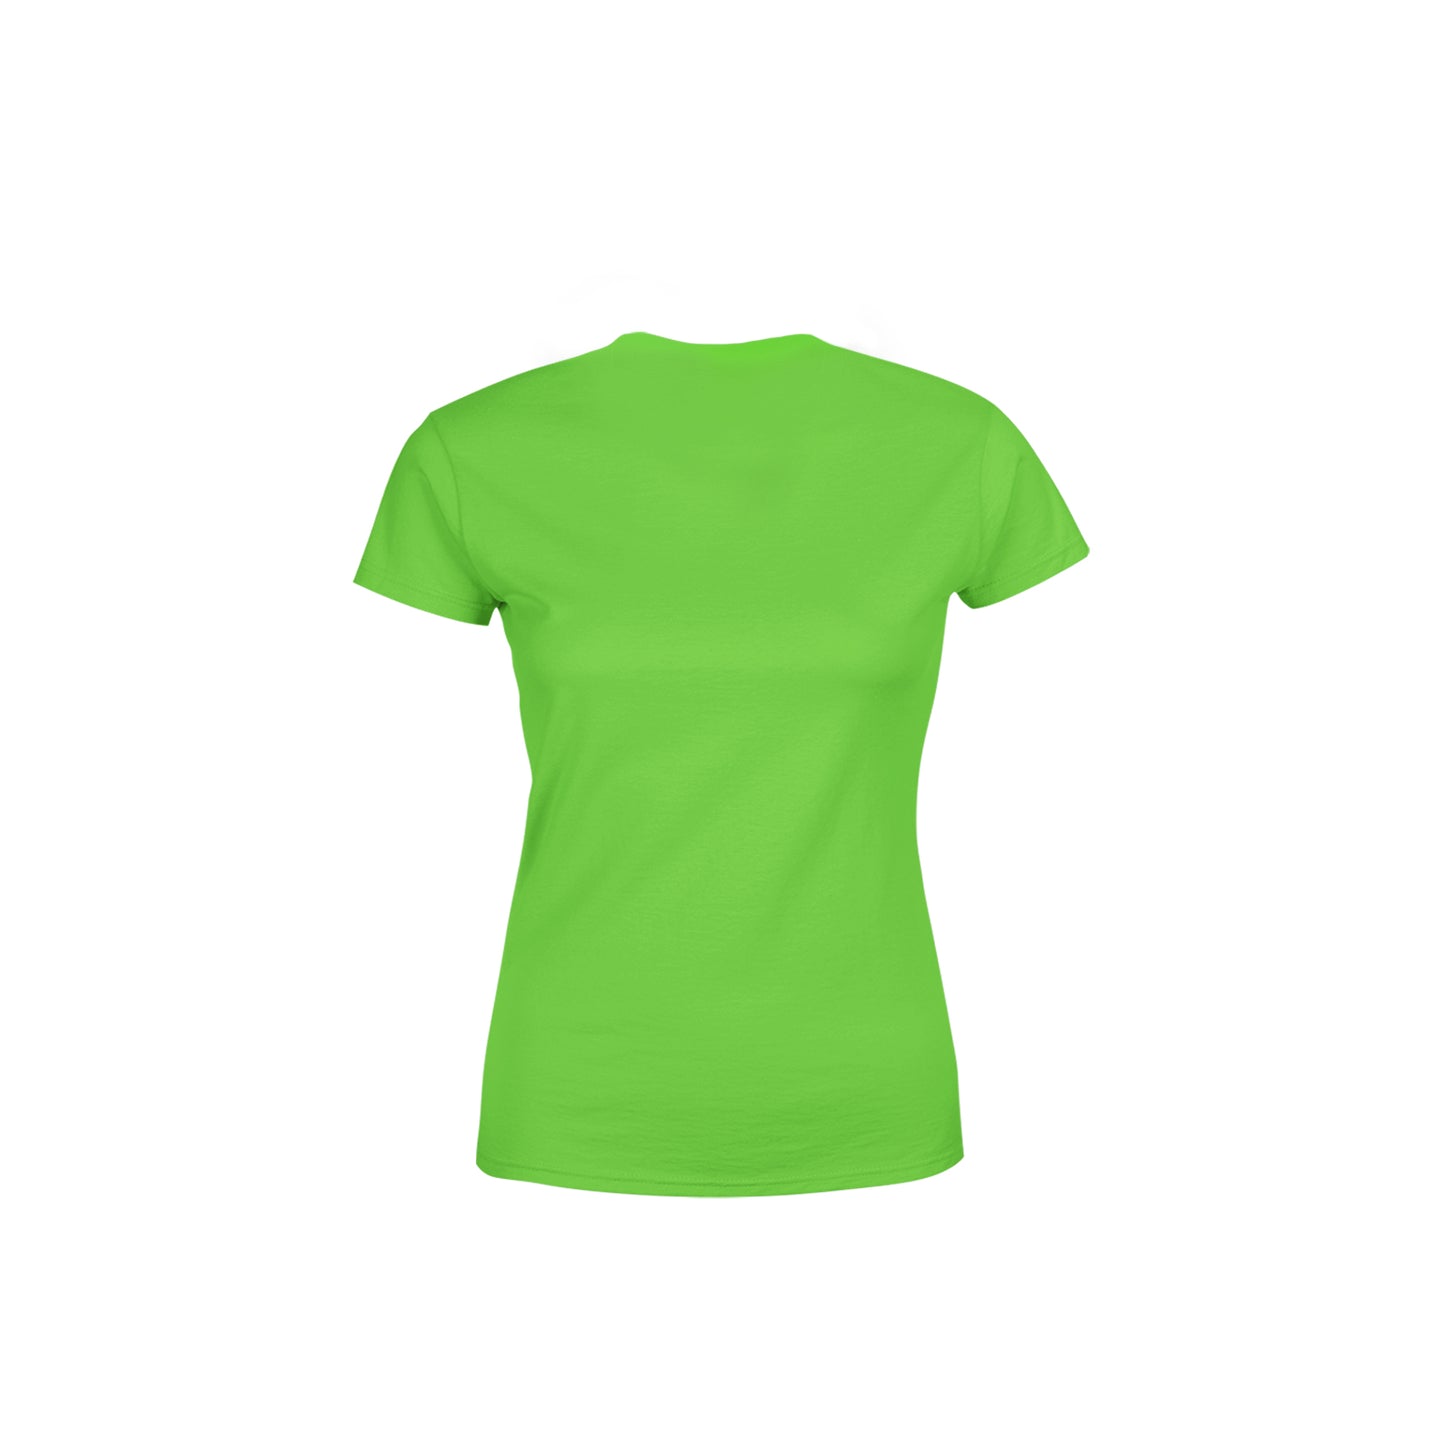 16 Number Women's T-Shirt (Liril Green)